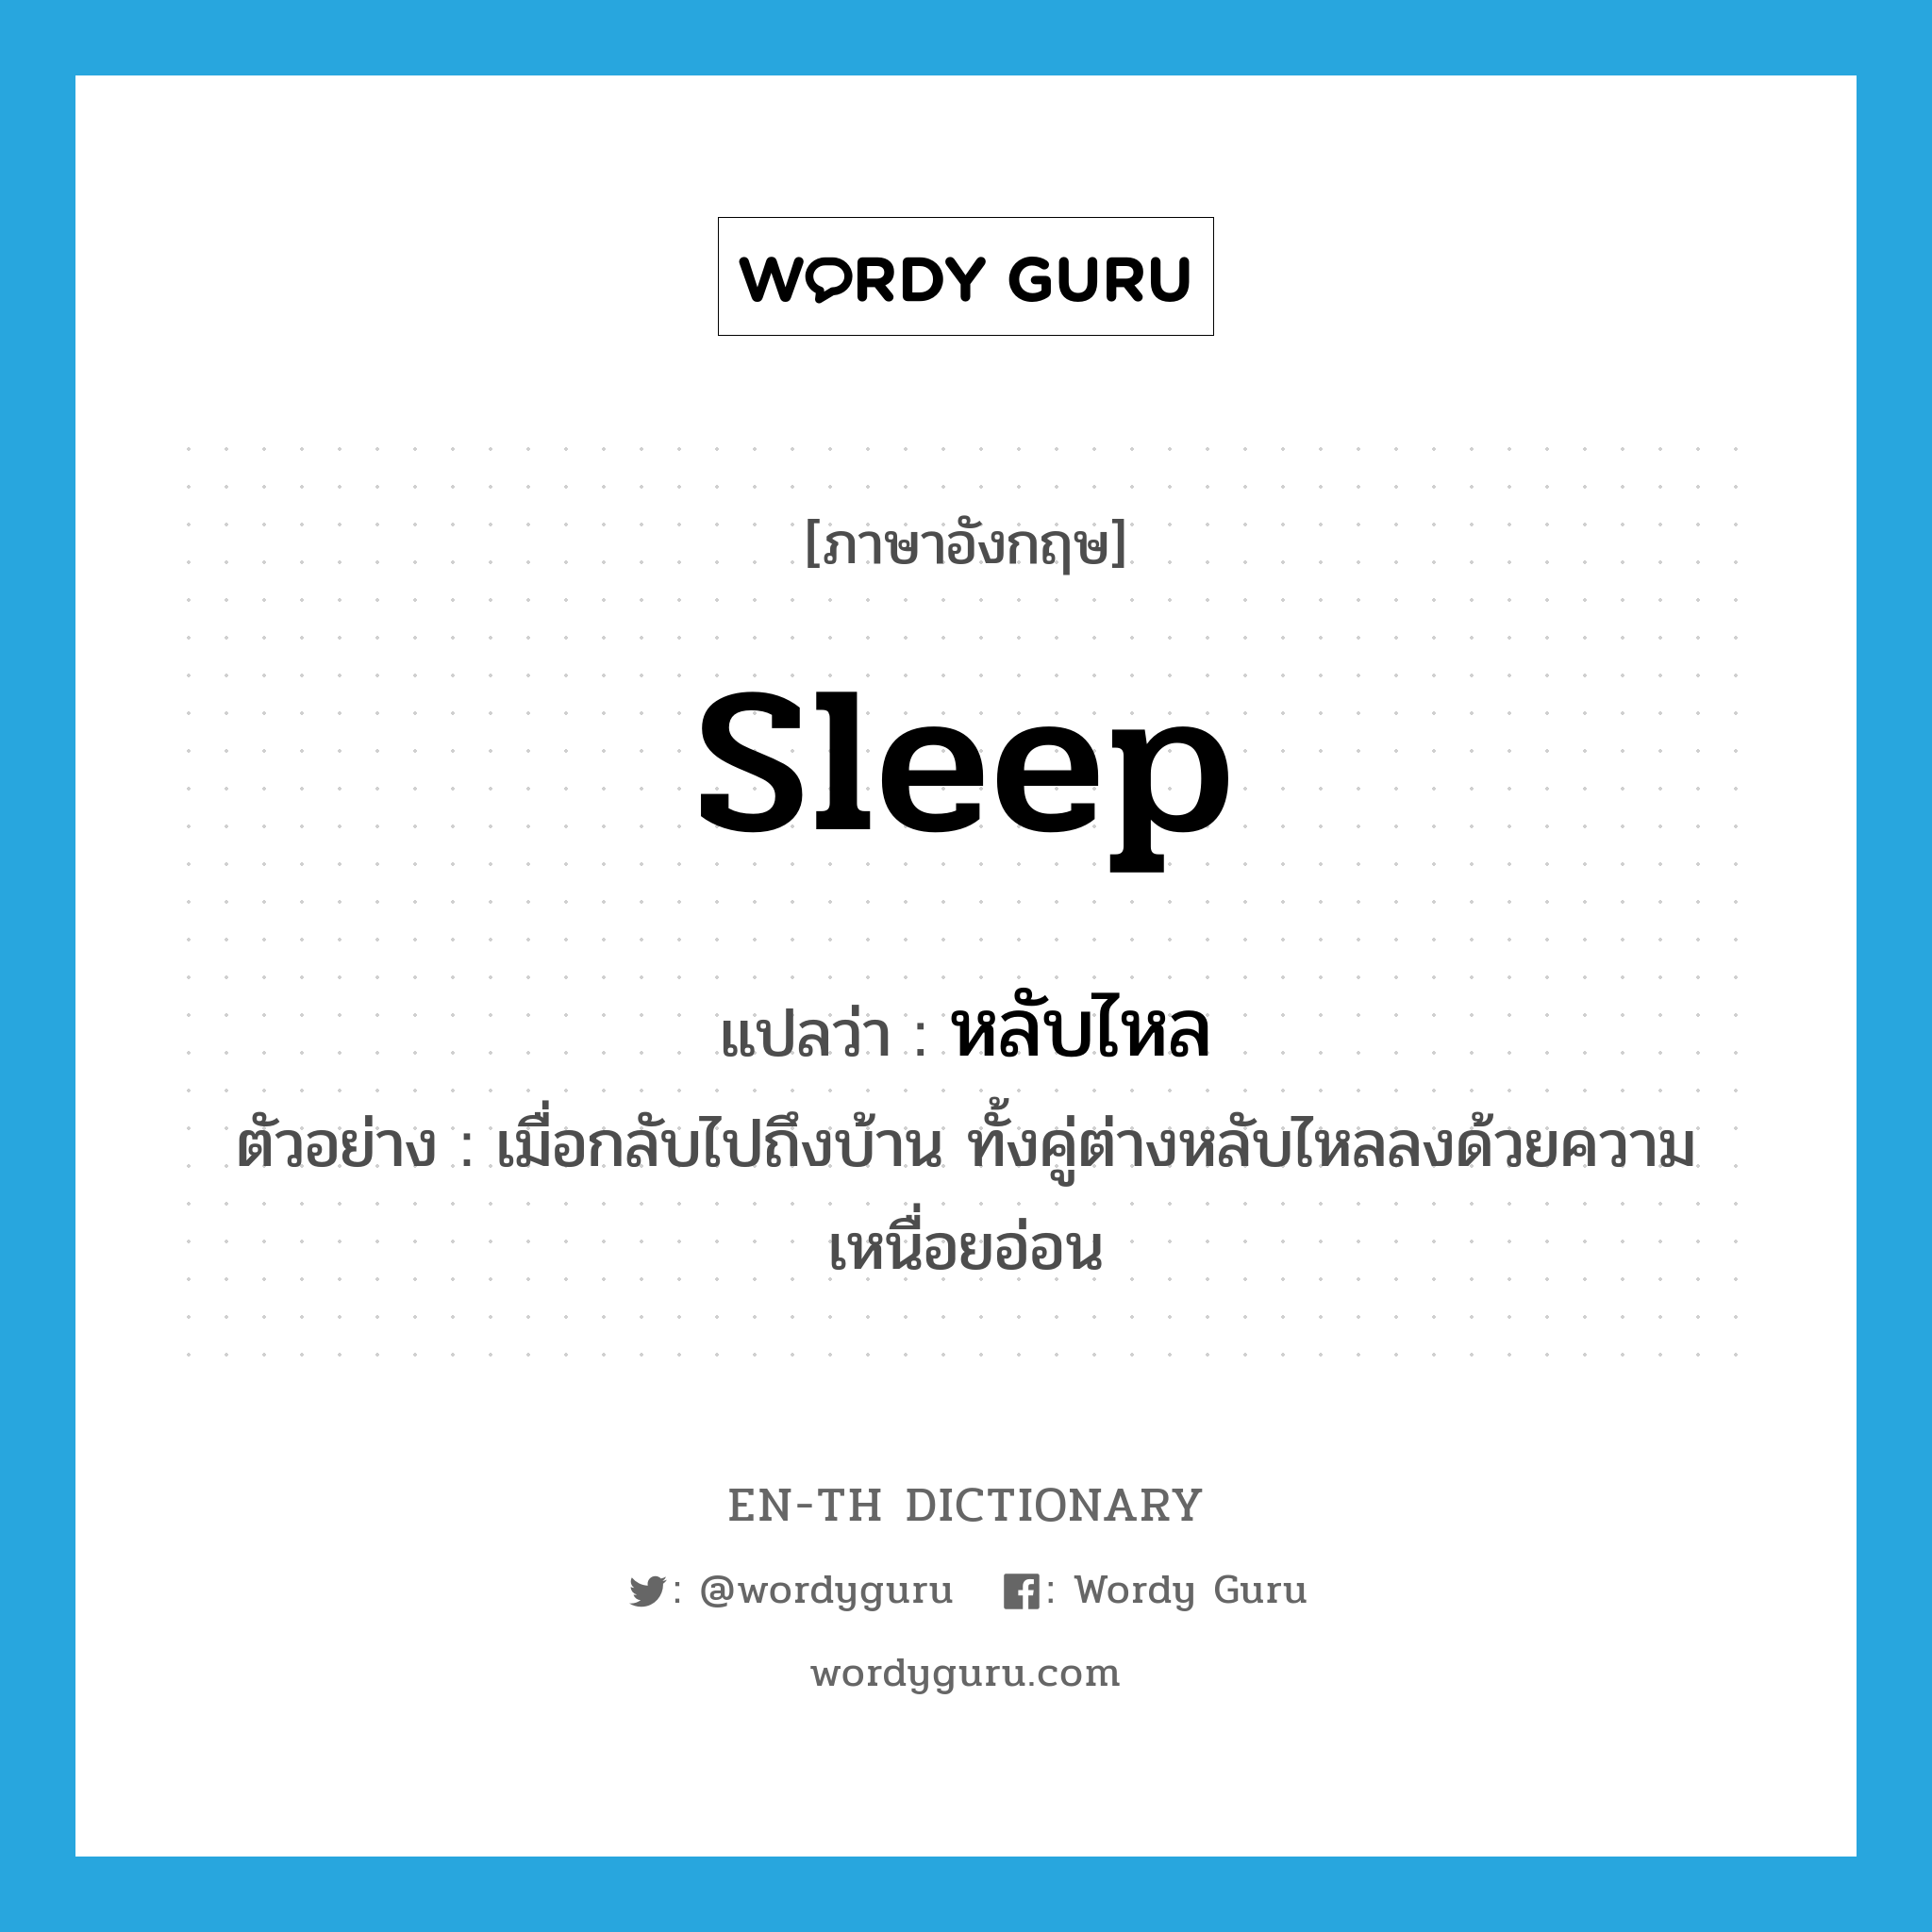 หลับไหล ภาษาอังกฤษ?, คำศัพท์ภาษาอังกฤษ หลับไหล แปลว่า sleep ประเภท V ตัวอย่าง เมื่อกลับไปถึงบ้าน ทั้งคู่ต่างหลับไหลลงด้วยความเหนื่อยอ่อน หมวด V